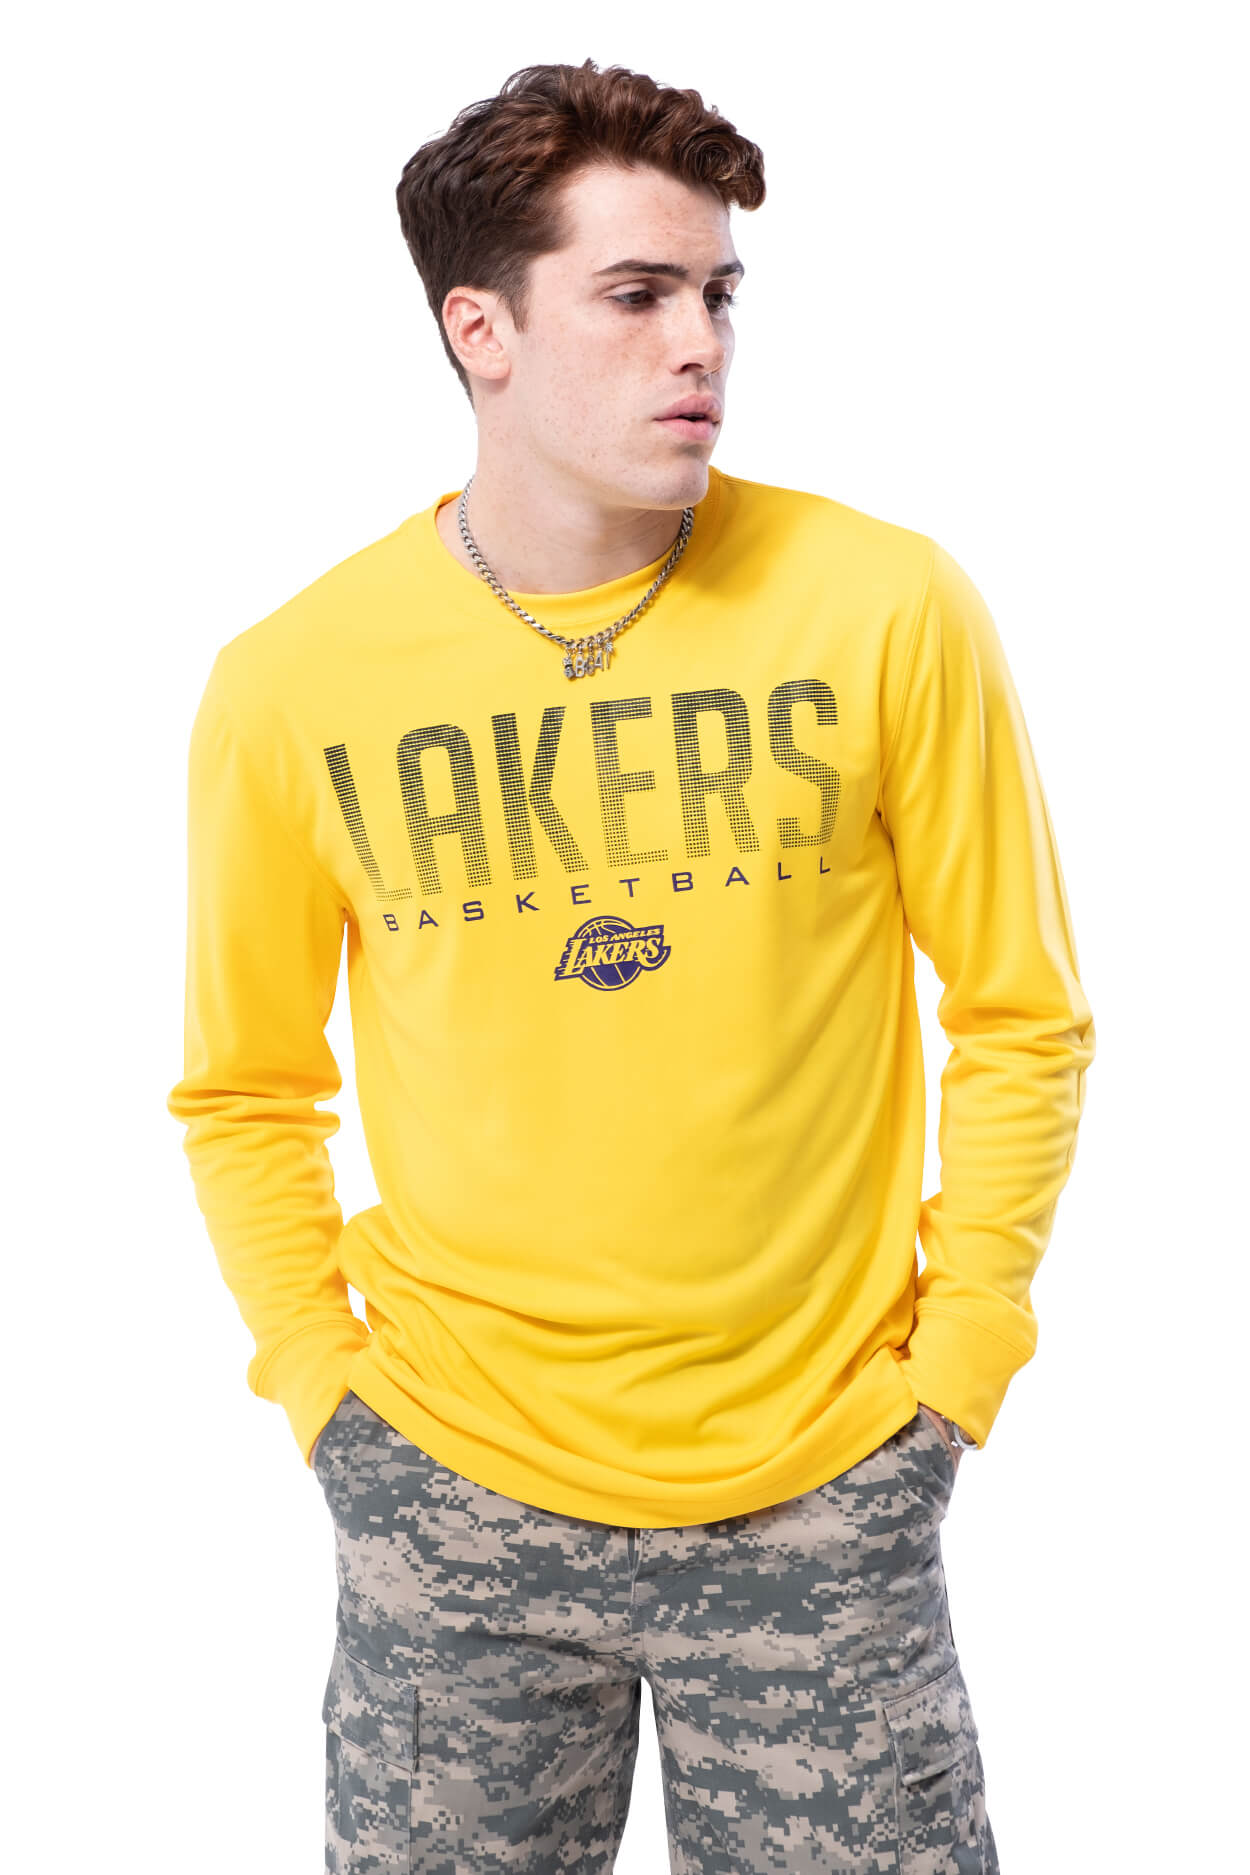 NBA Los Angeles Lakers Men's Long Sleeve Tee|Los Angeles Lakers